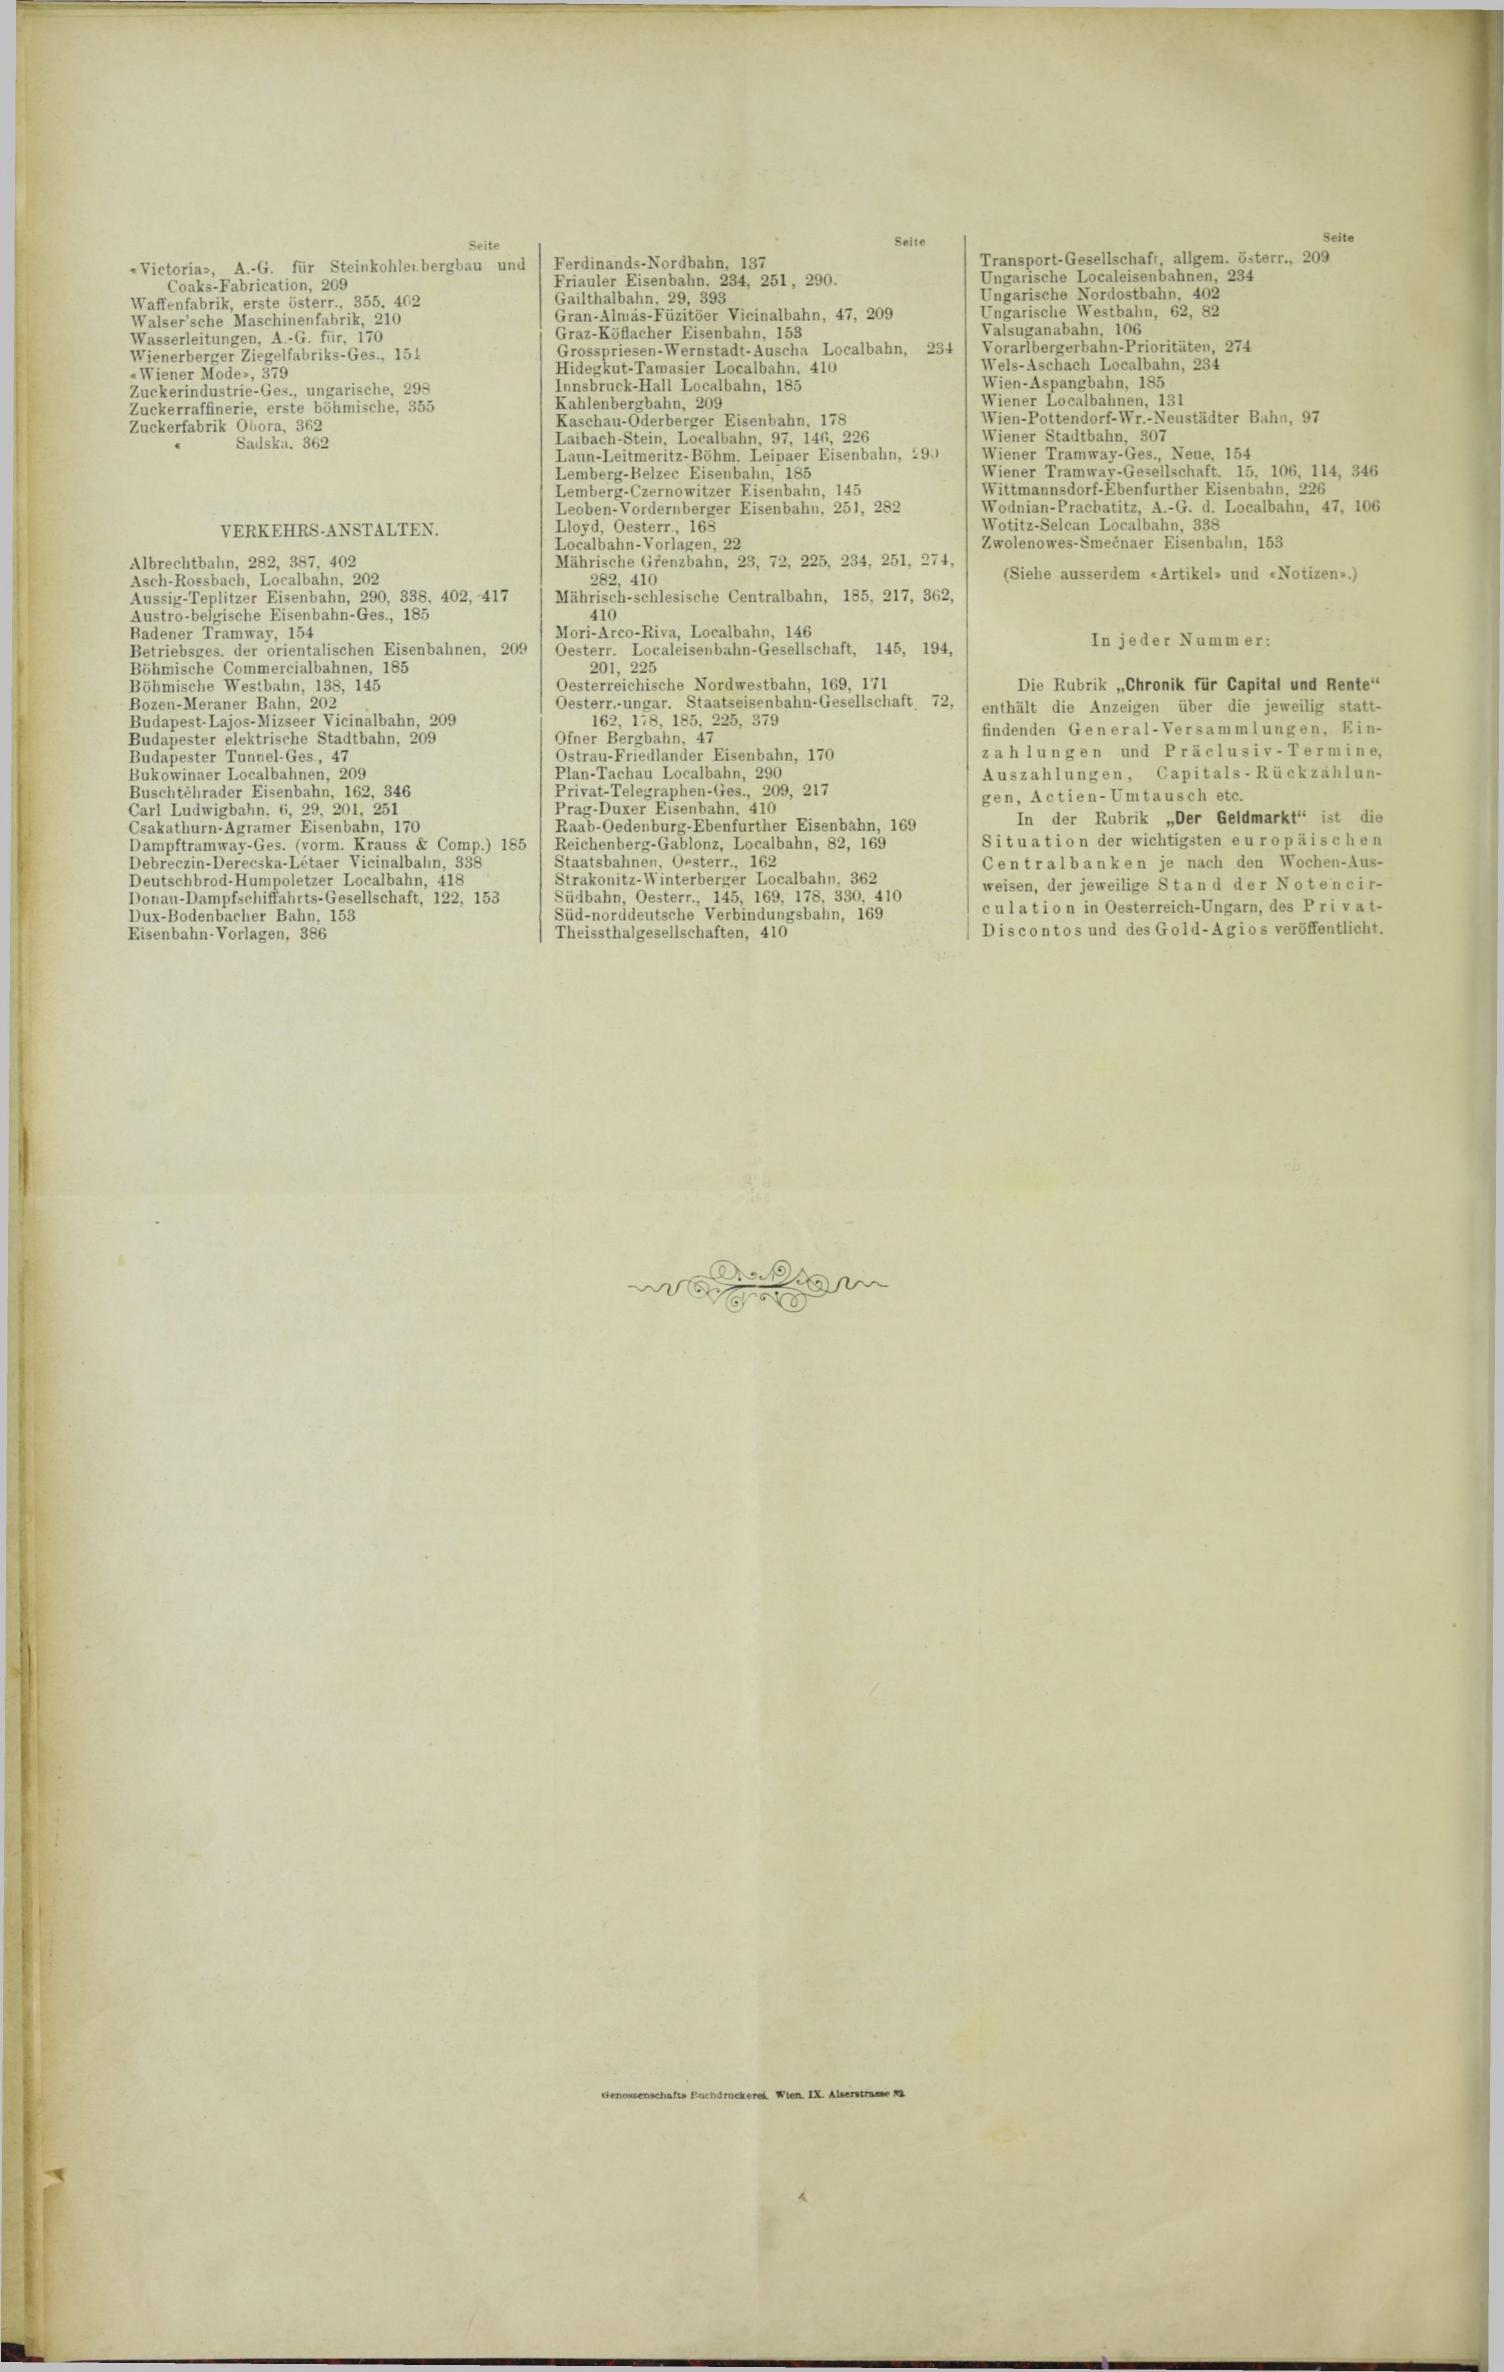 Der Tresor 23.02.1893 - Seite 12